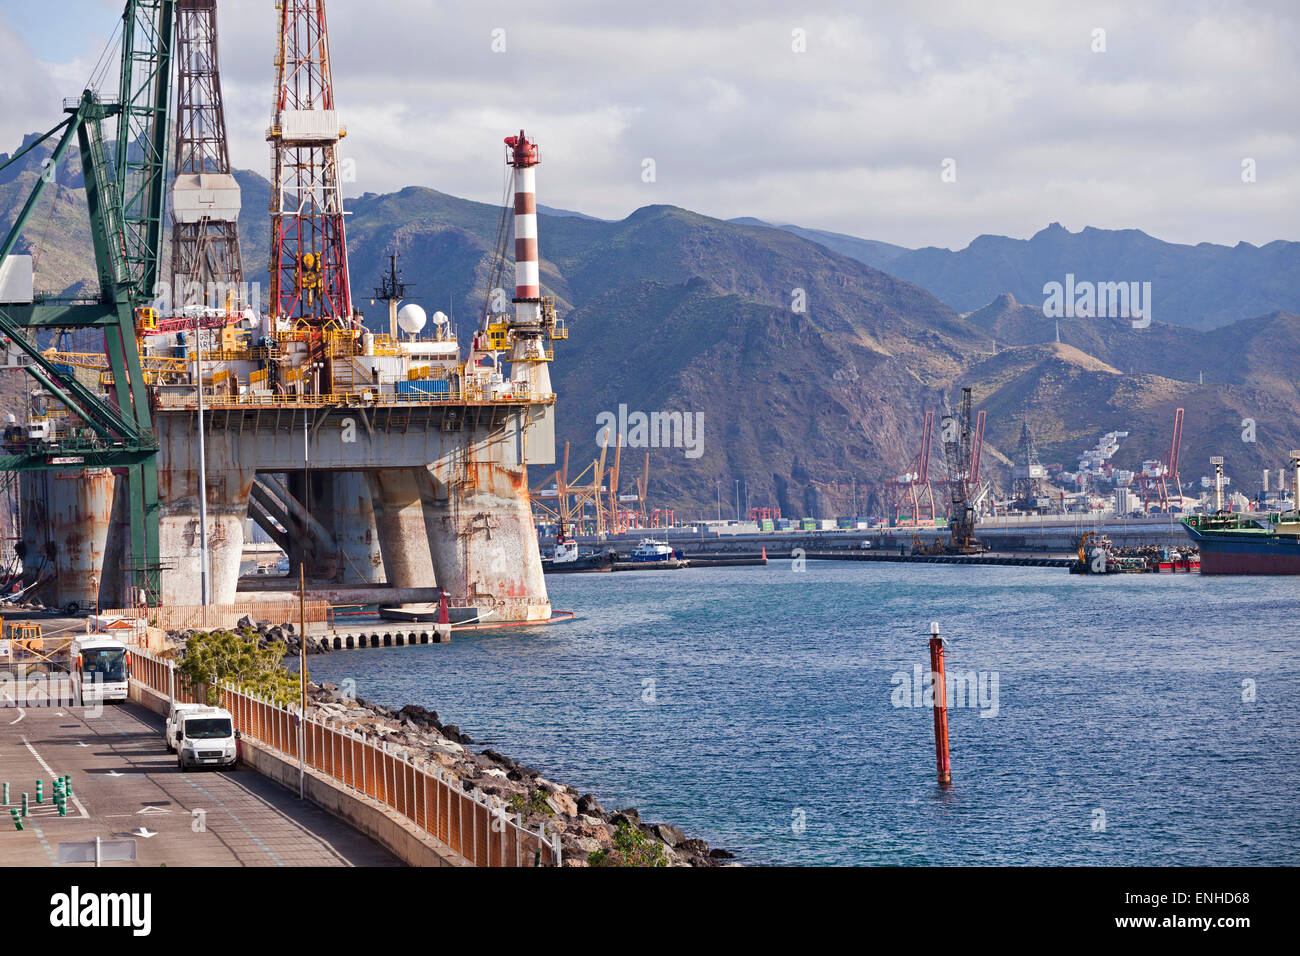 La plate-forme de pétrole dans le port de Santa Cruz de Tenerife, Tenerife, Canaries, Espagne, Europe Banque D'Images